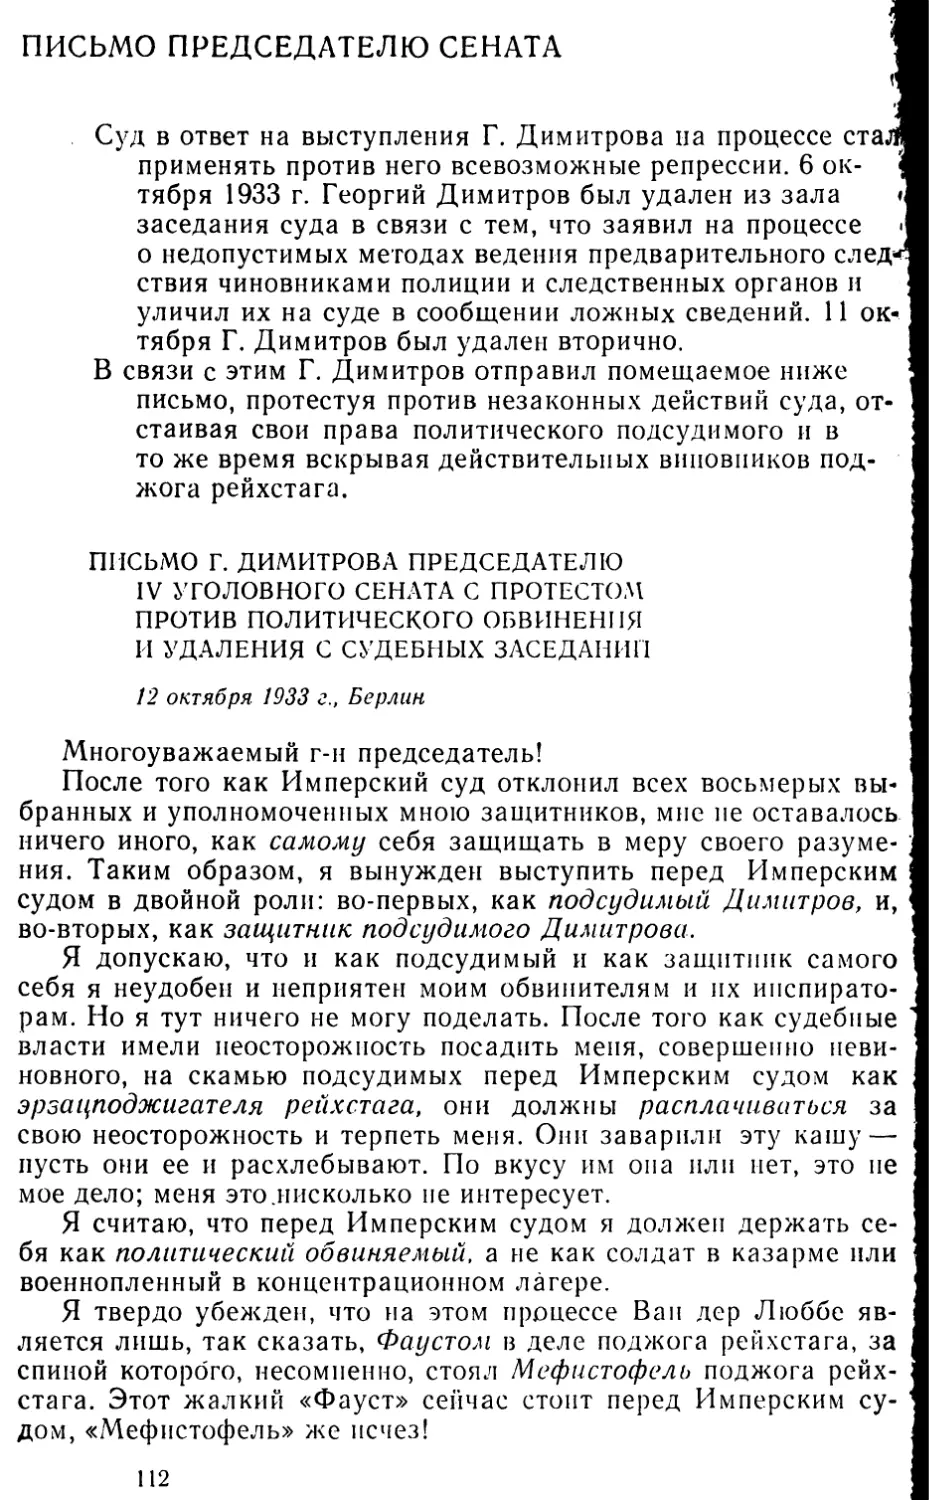 Письмо председателю сената
Письмо Г. Димитрова председателю IV уголовного сената с протестом против политического обвинения и удаления с судебных заседаний. 12 октября 1933 г